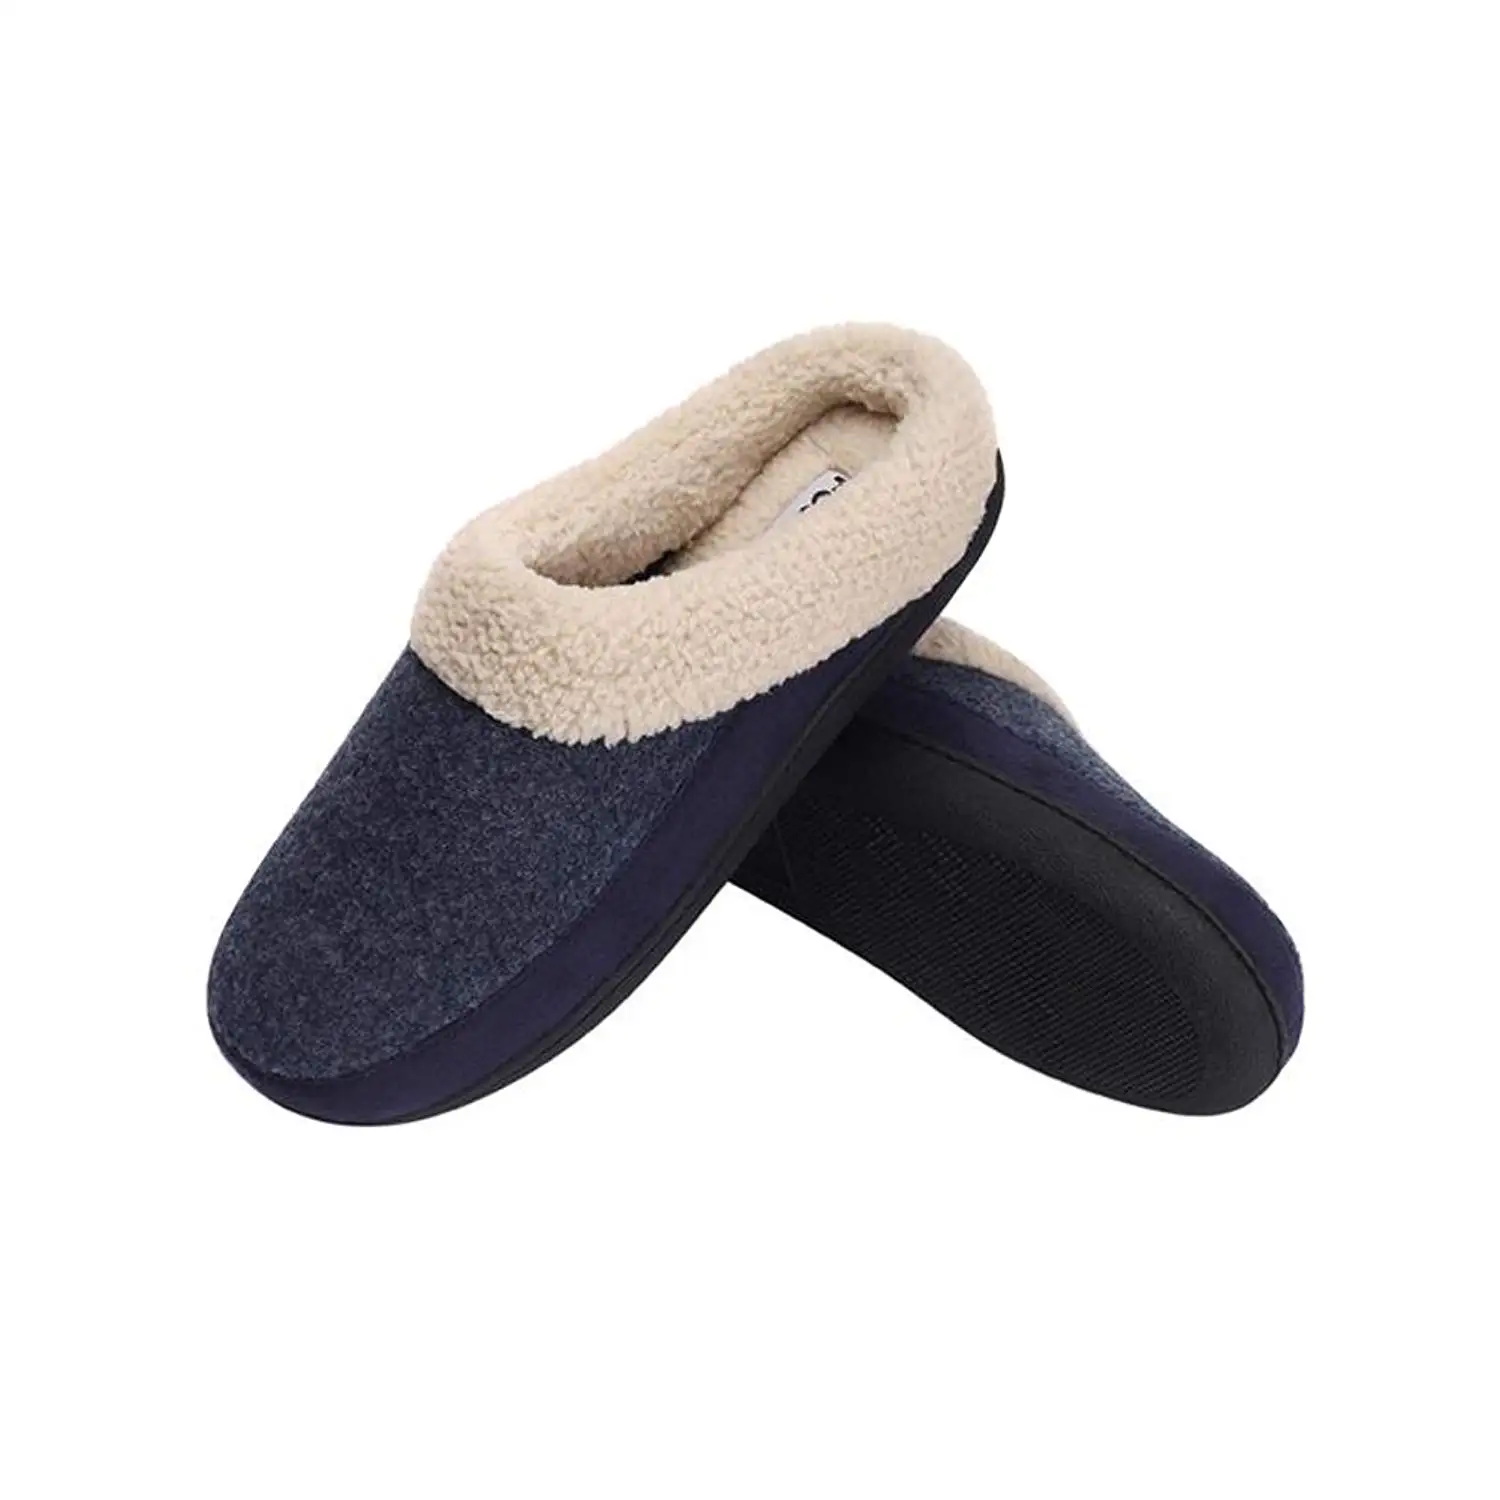 men's plush house slippers